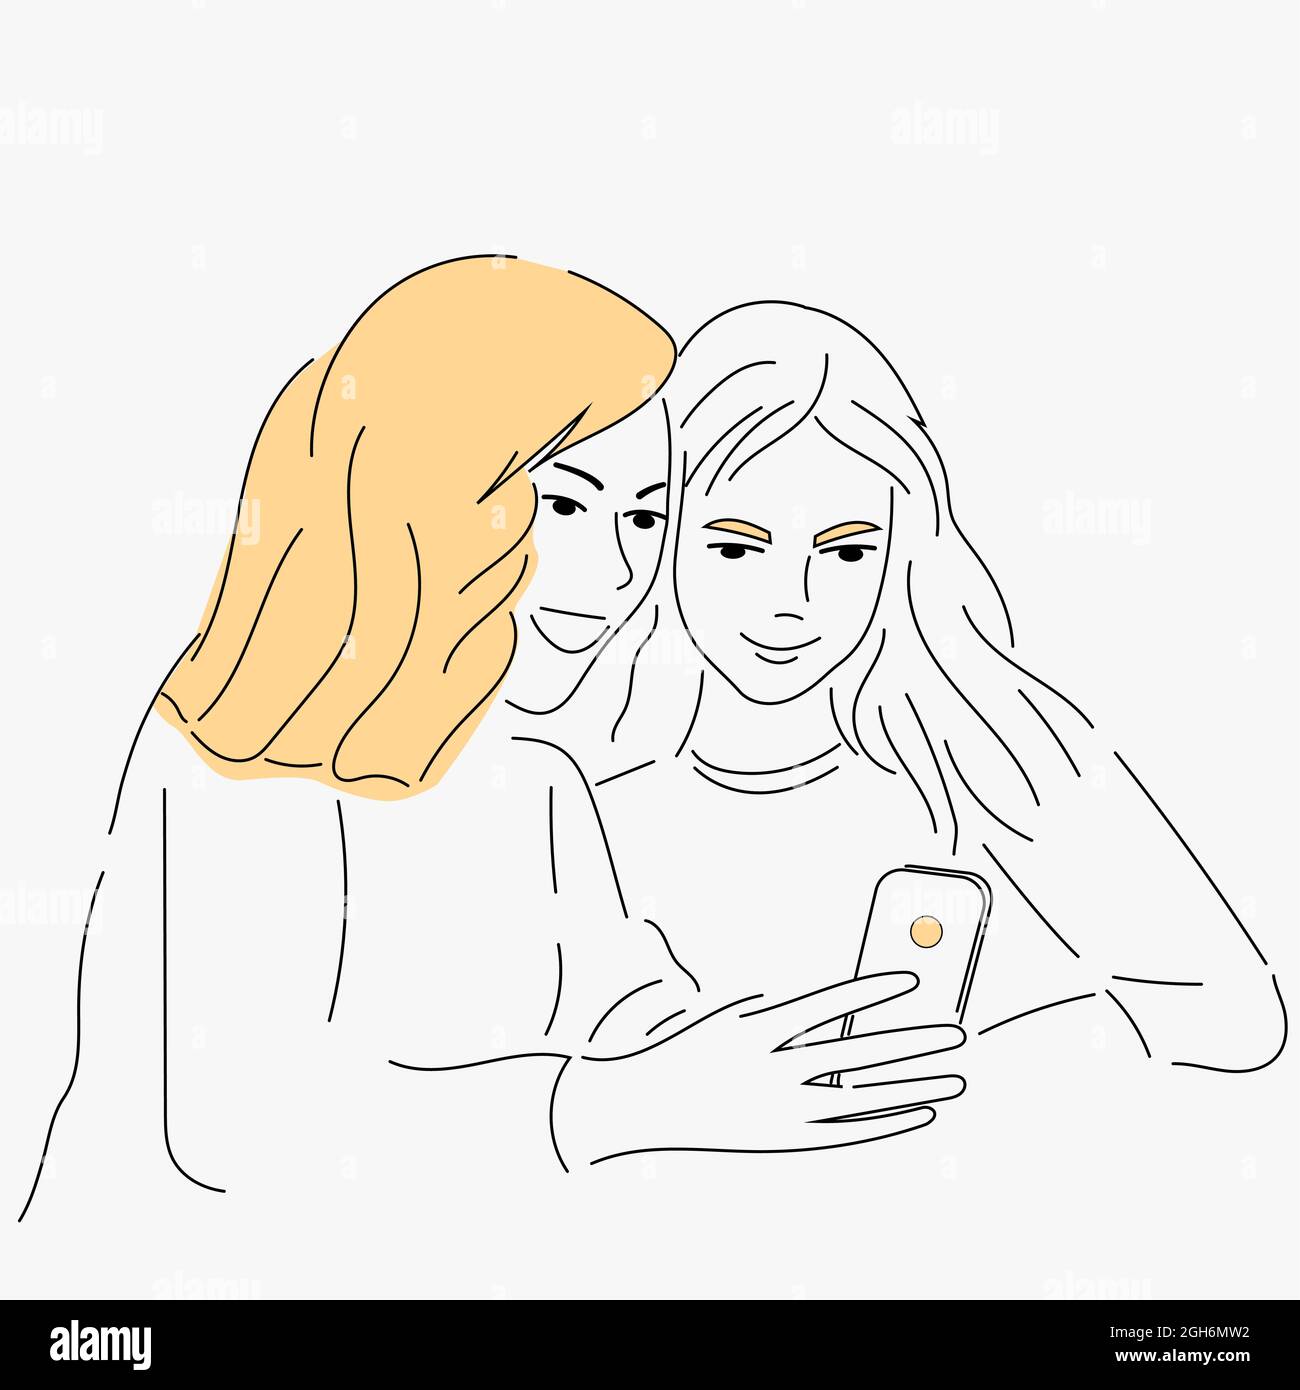 Zwei Mädchen schauen sich das Telefon an. Freundschaft und Kommunikation. Vektor-Handzeichnung Stock Vektor